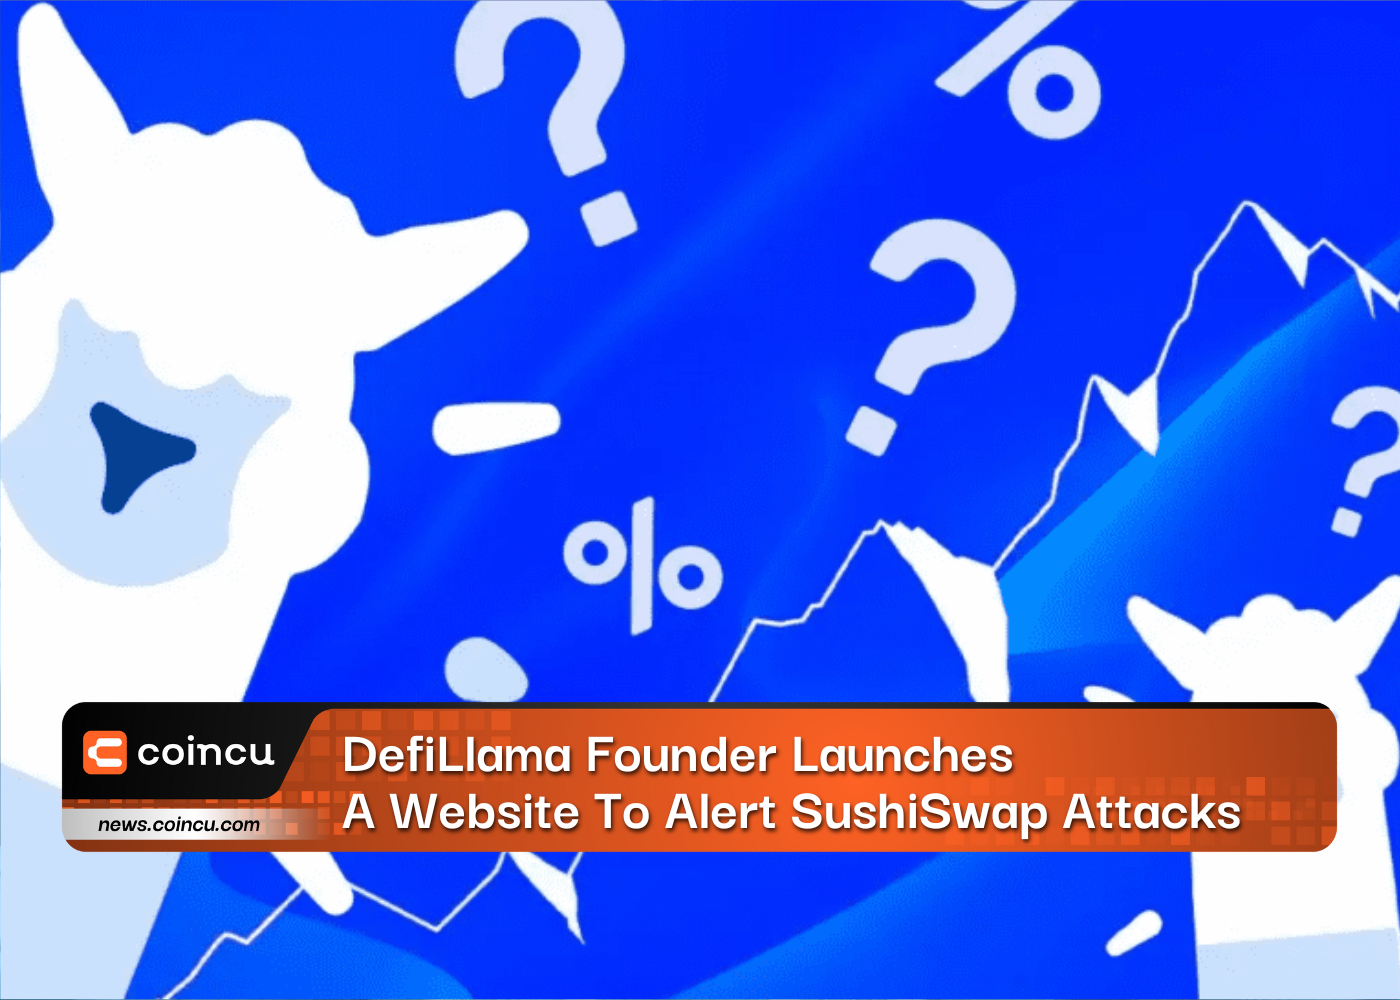 Le fondateur de DefiLlama lance un site Web pour alerter les attaques SushiSwap